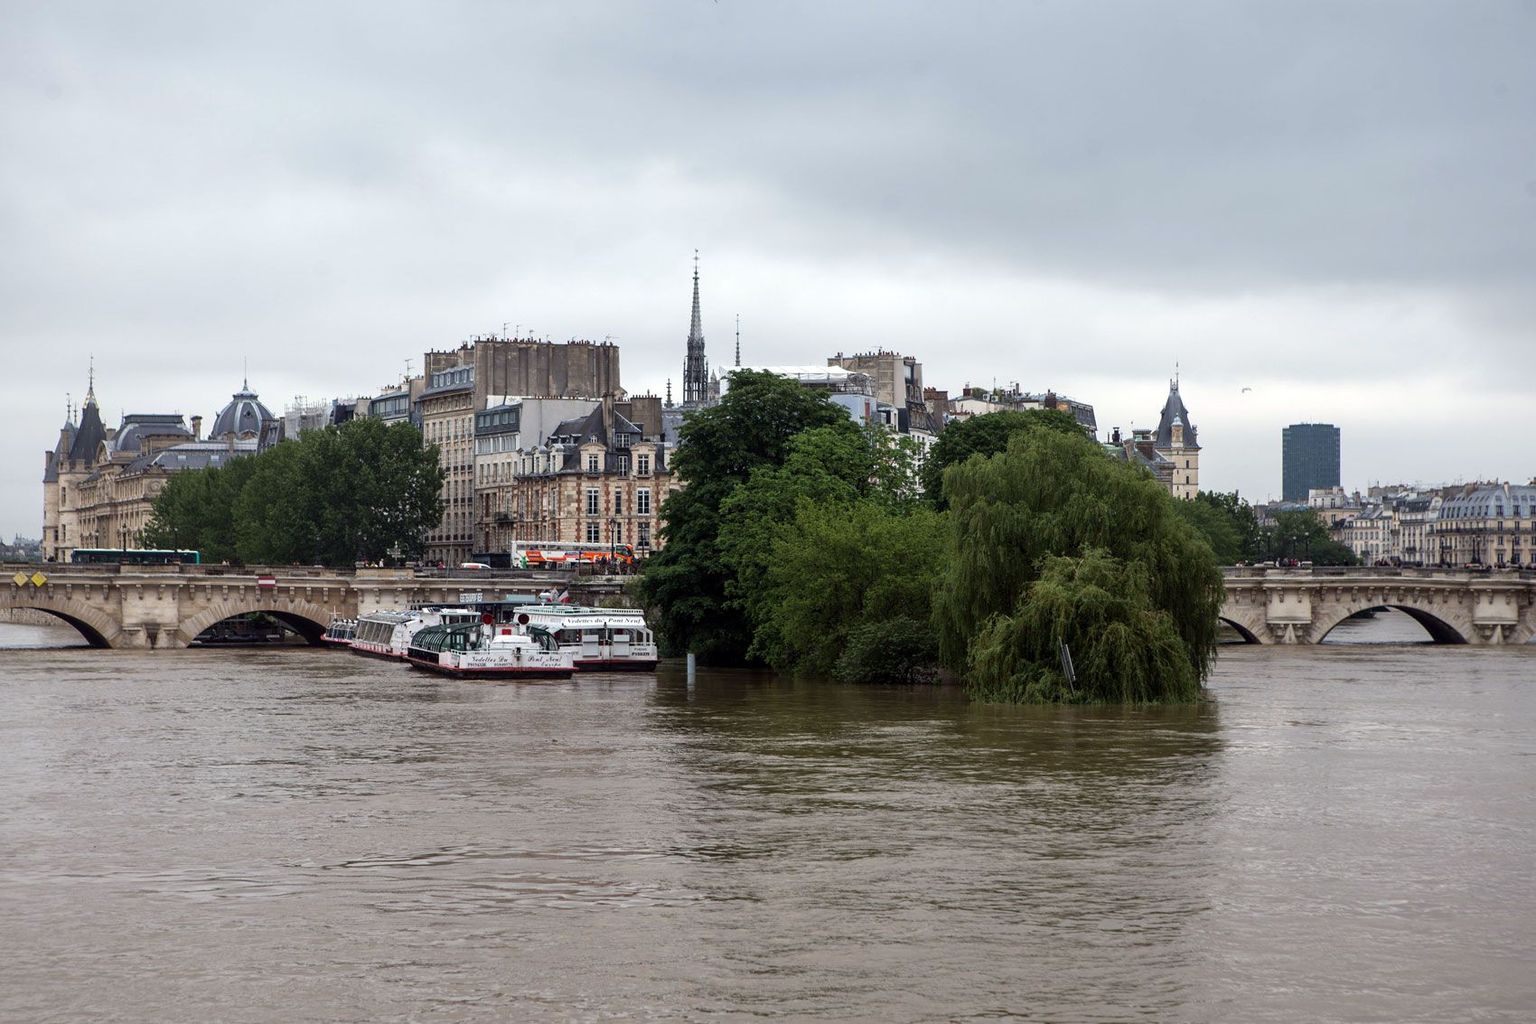 Lõbusõidulaevad ei pääse liikuma, sest Seine on tõusnud sillakaarteni.